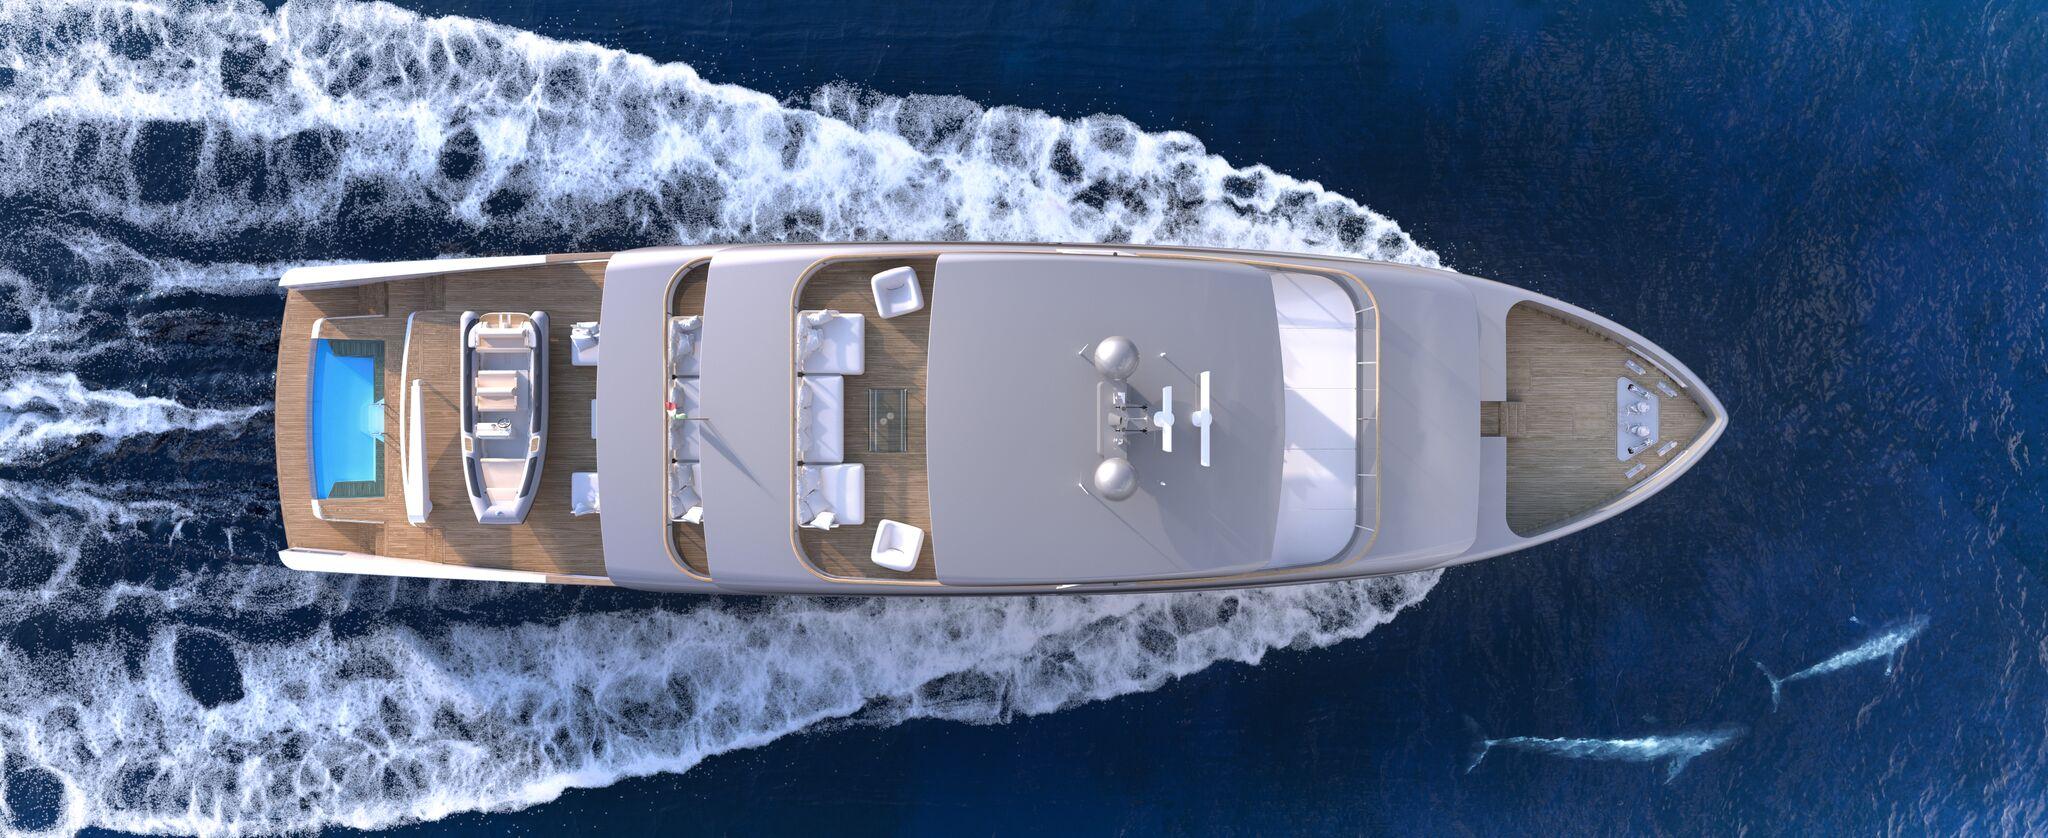 Rosetti Superyachts: new concepts by Giovanni Ceccarelli